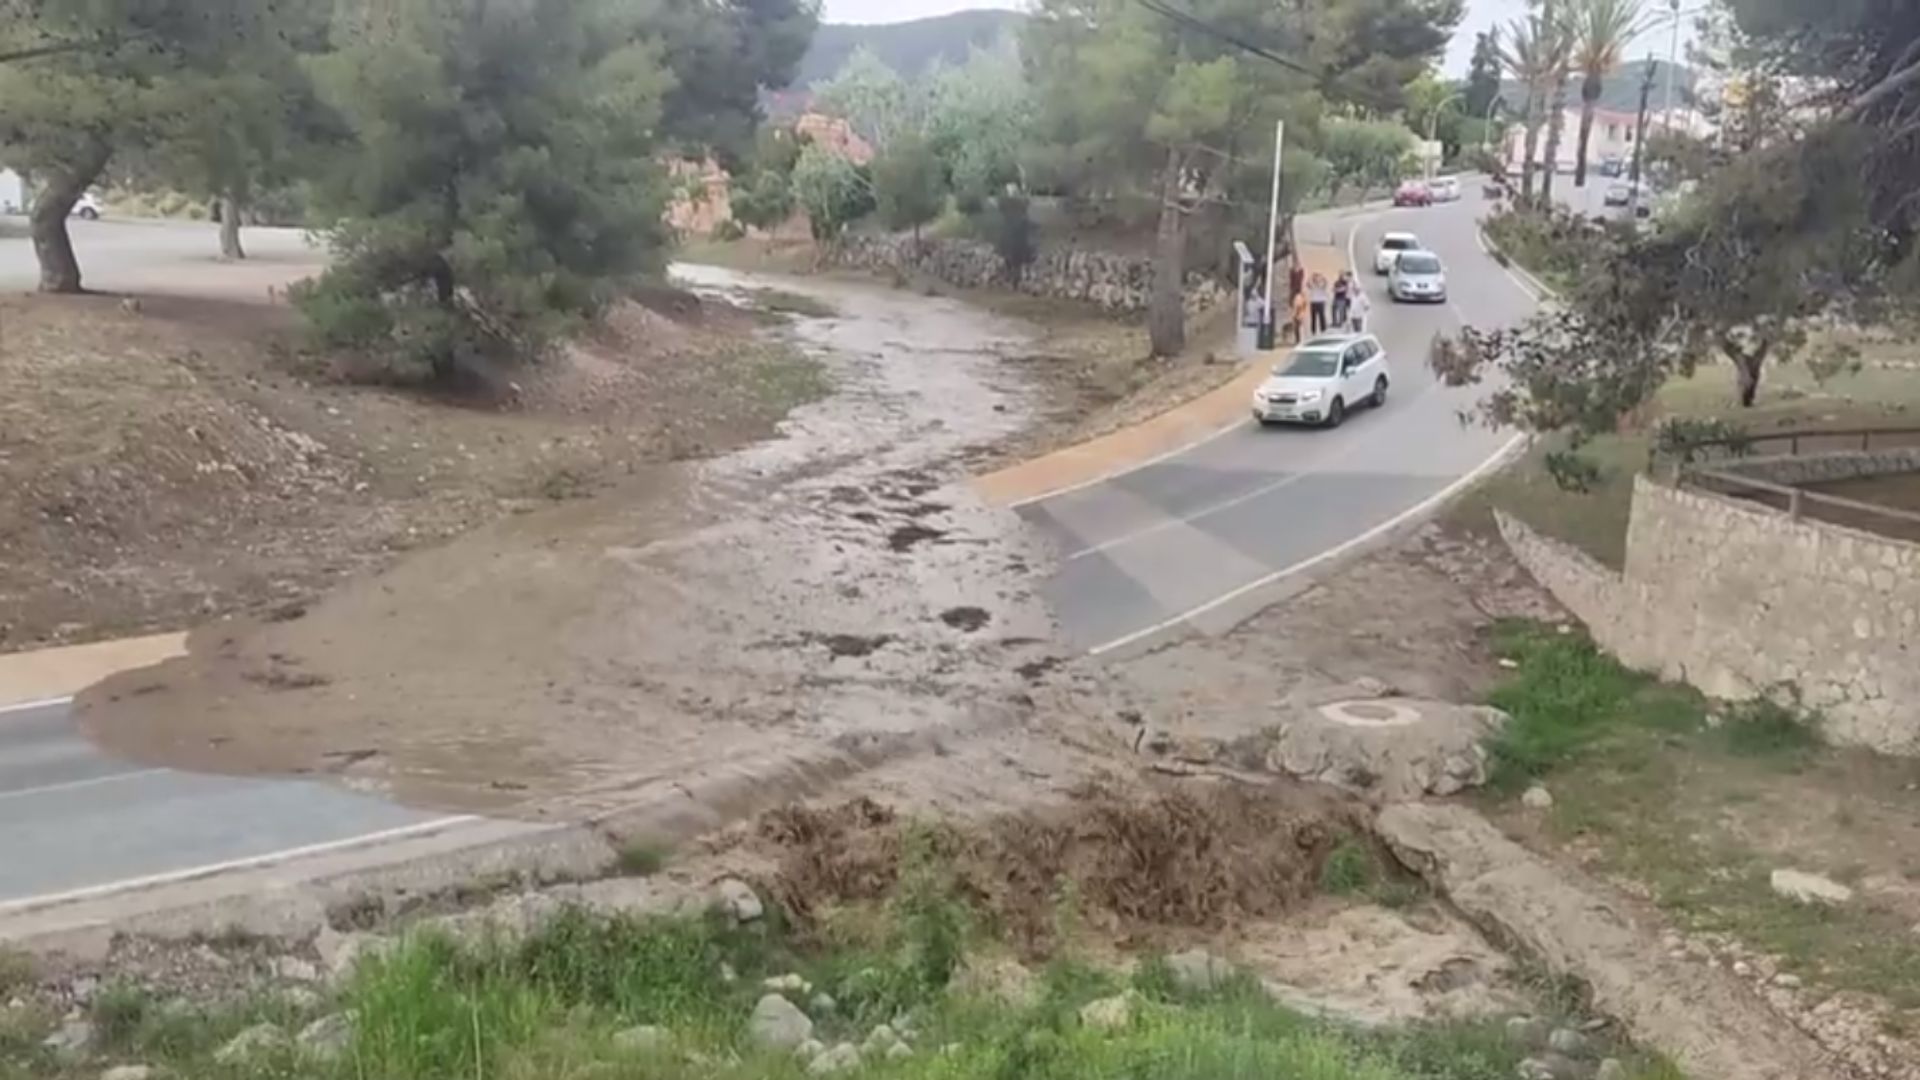 Severas inundaciones provocaron el bloqueo de una carretera en el noreste de España